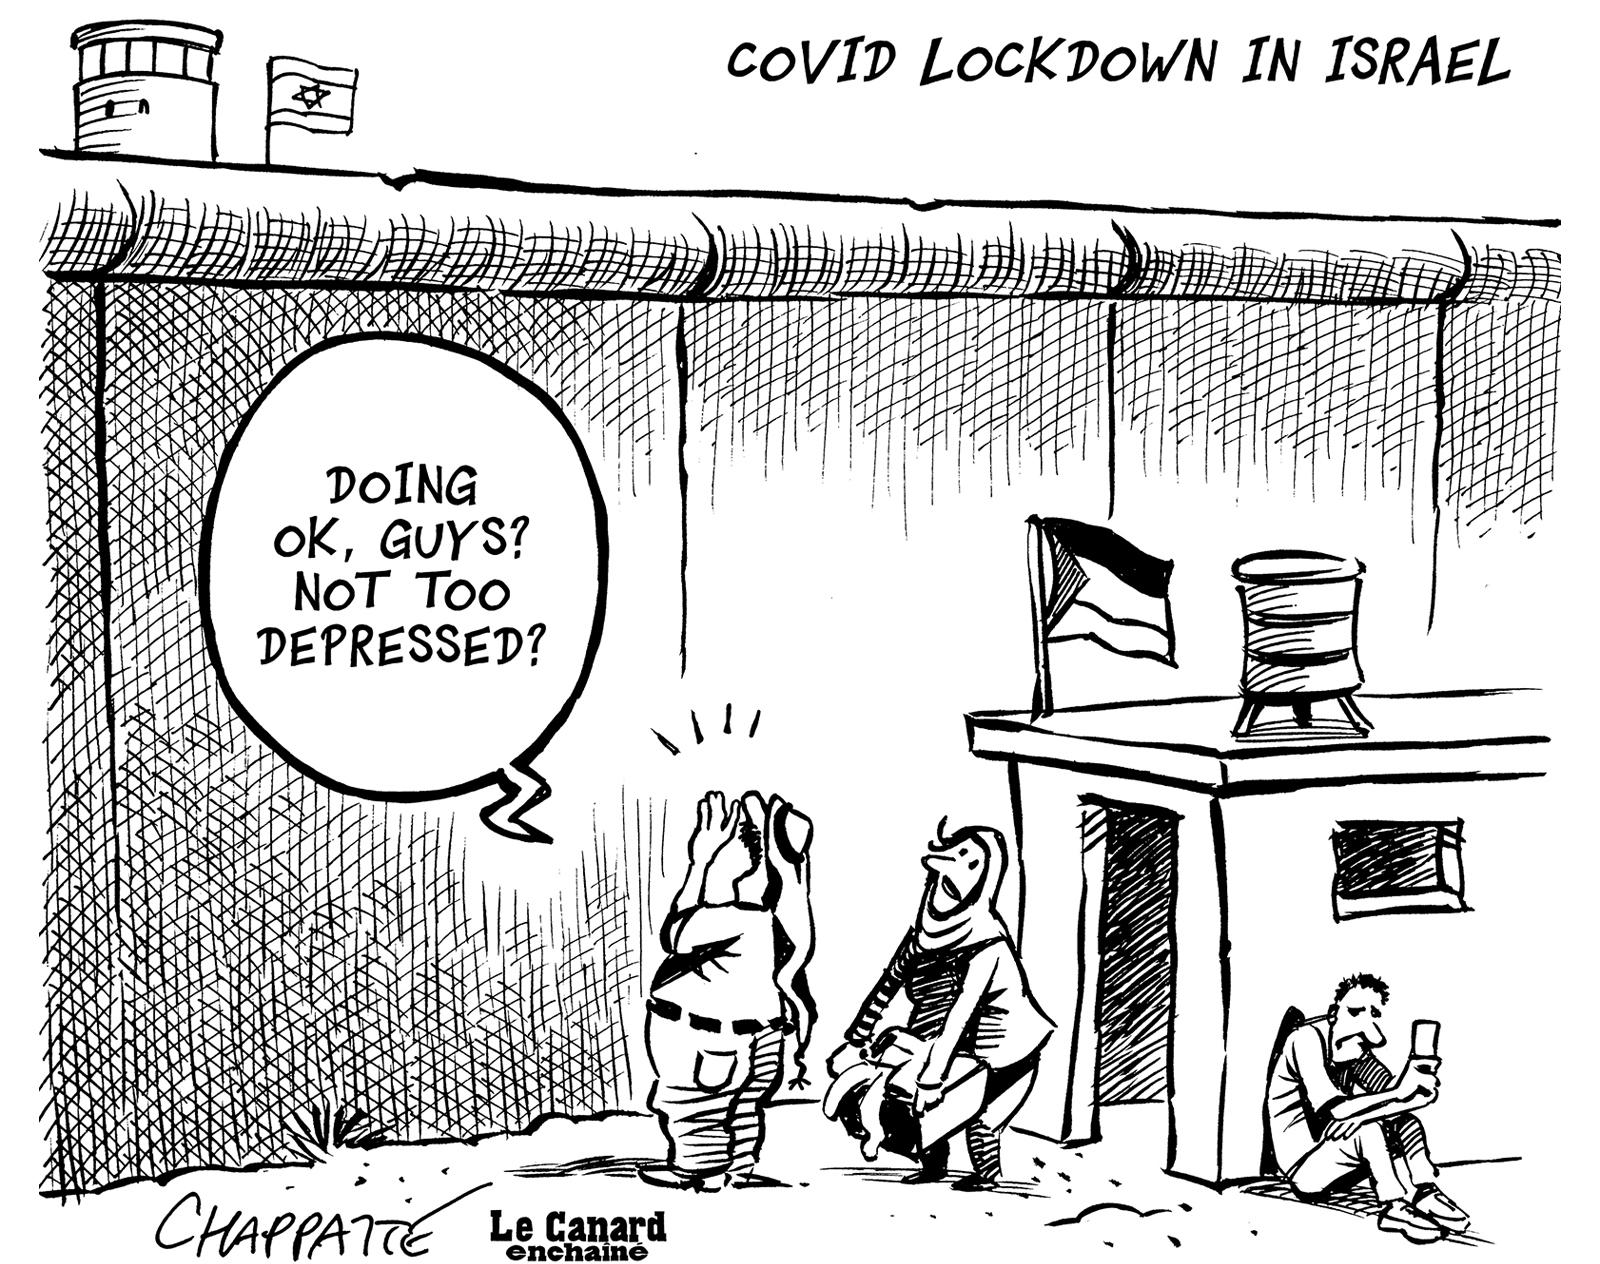 Covid lockdown in Israel